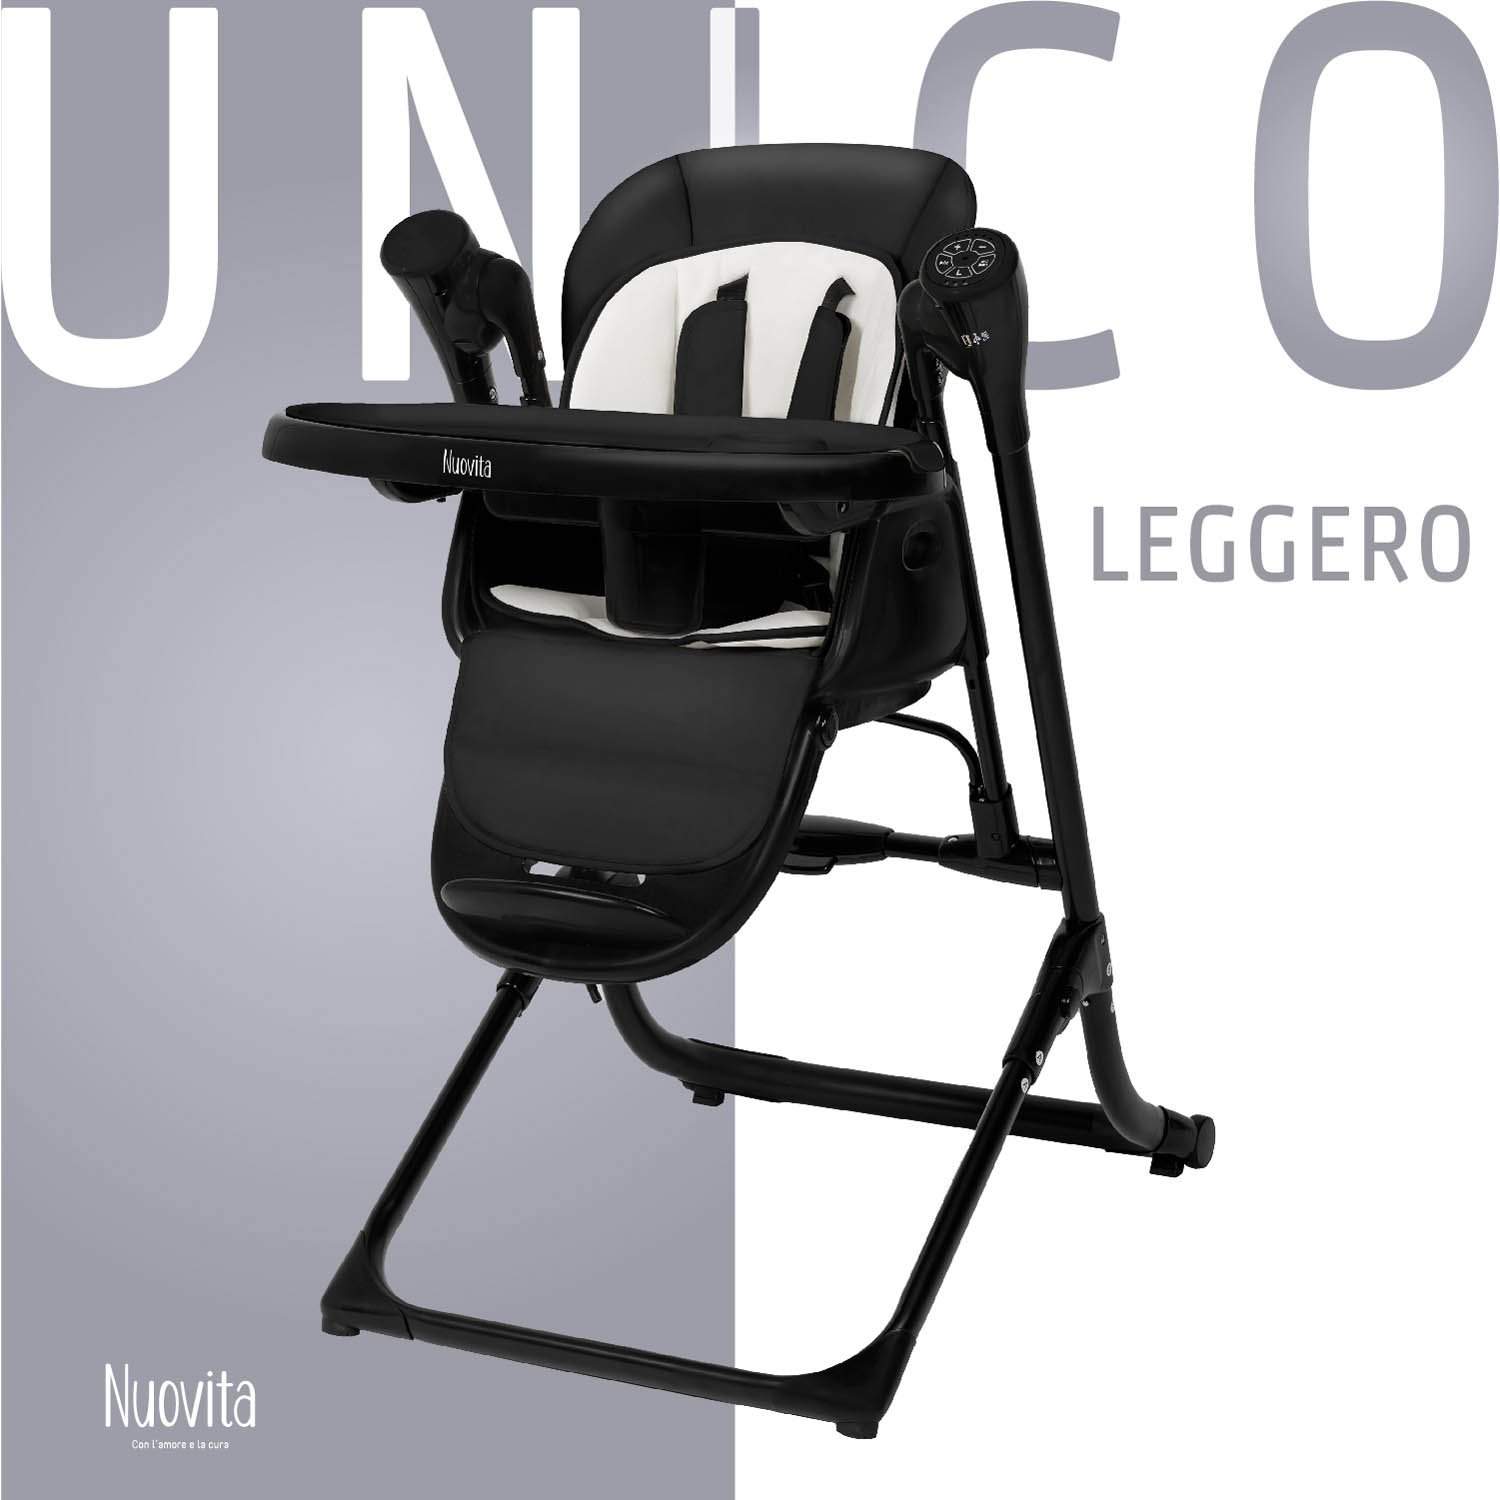 Стульчик для кормления с электронной функцией качения Nuovita Unico Leggero Nero черный